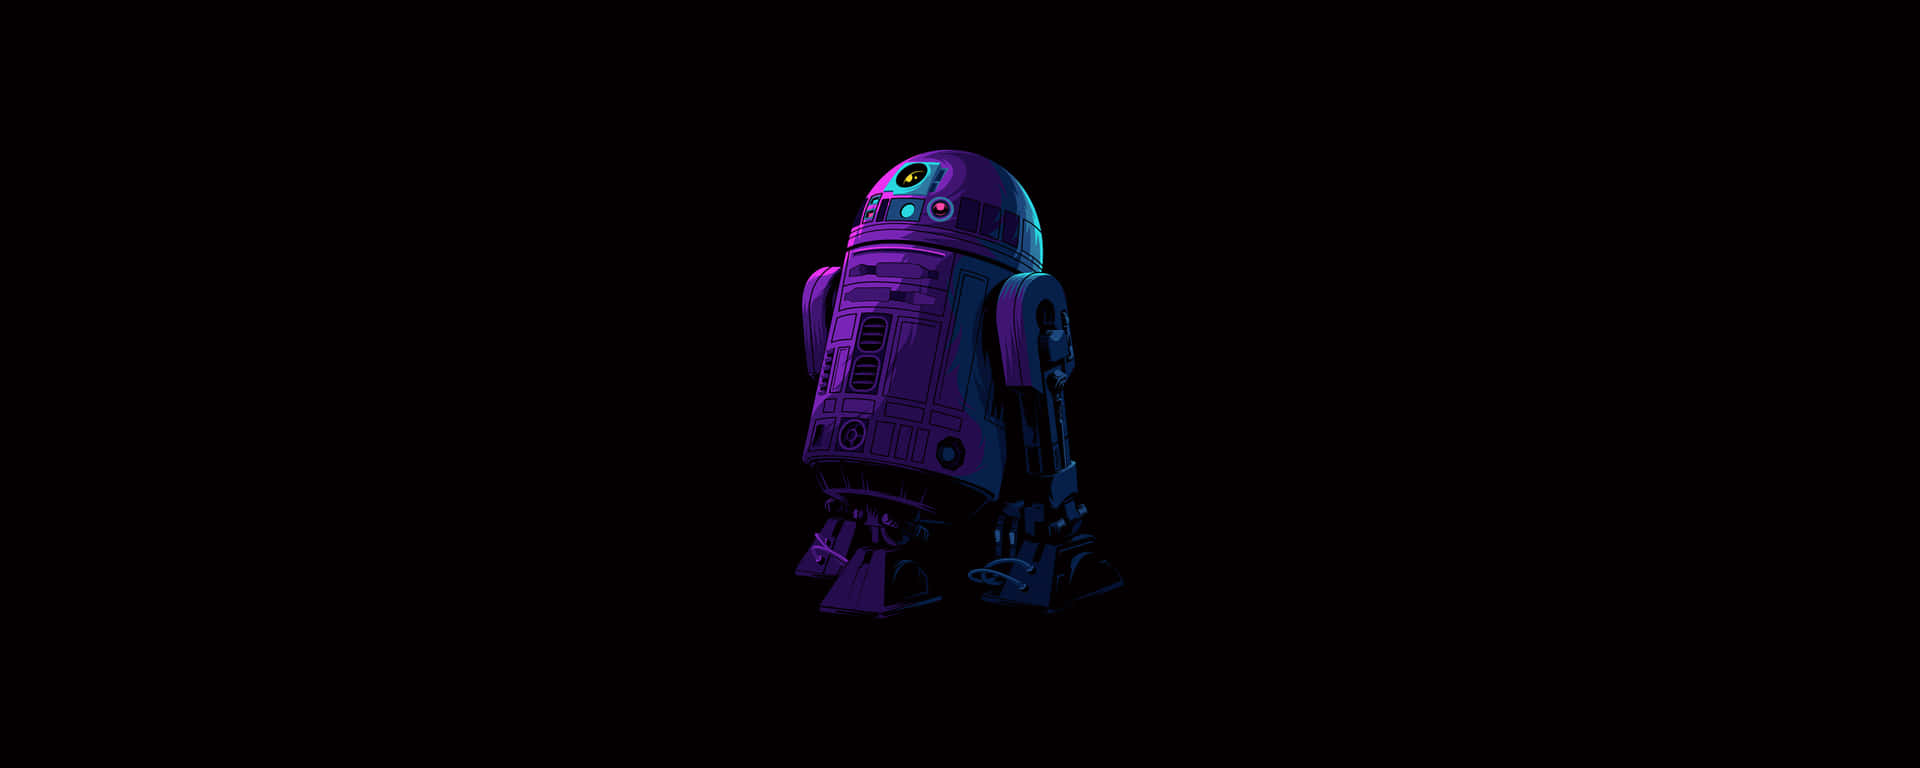 Den Ikoniska Droiden R2-d2. Wallpaper